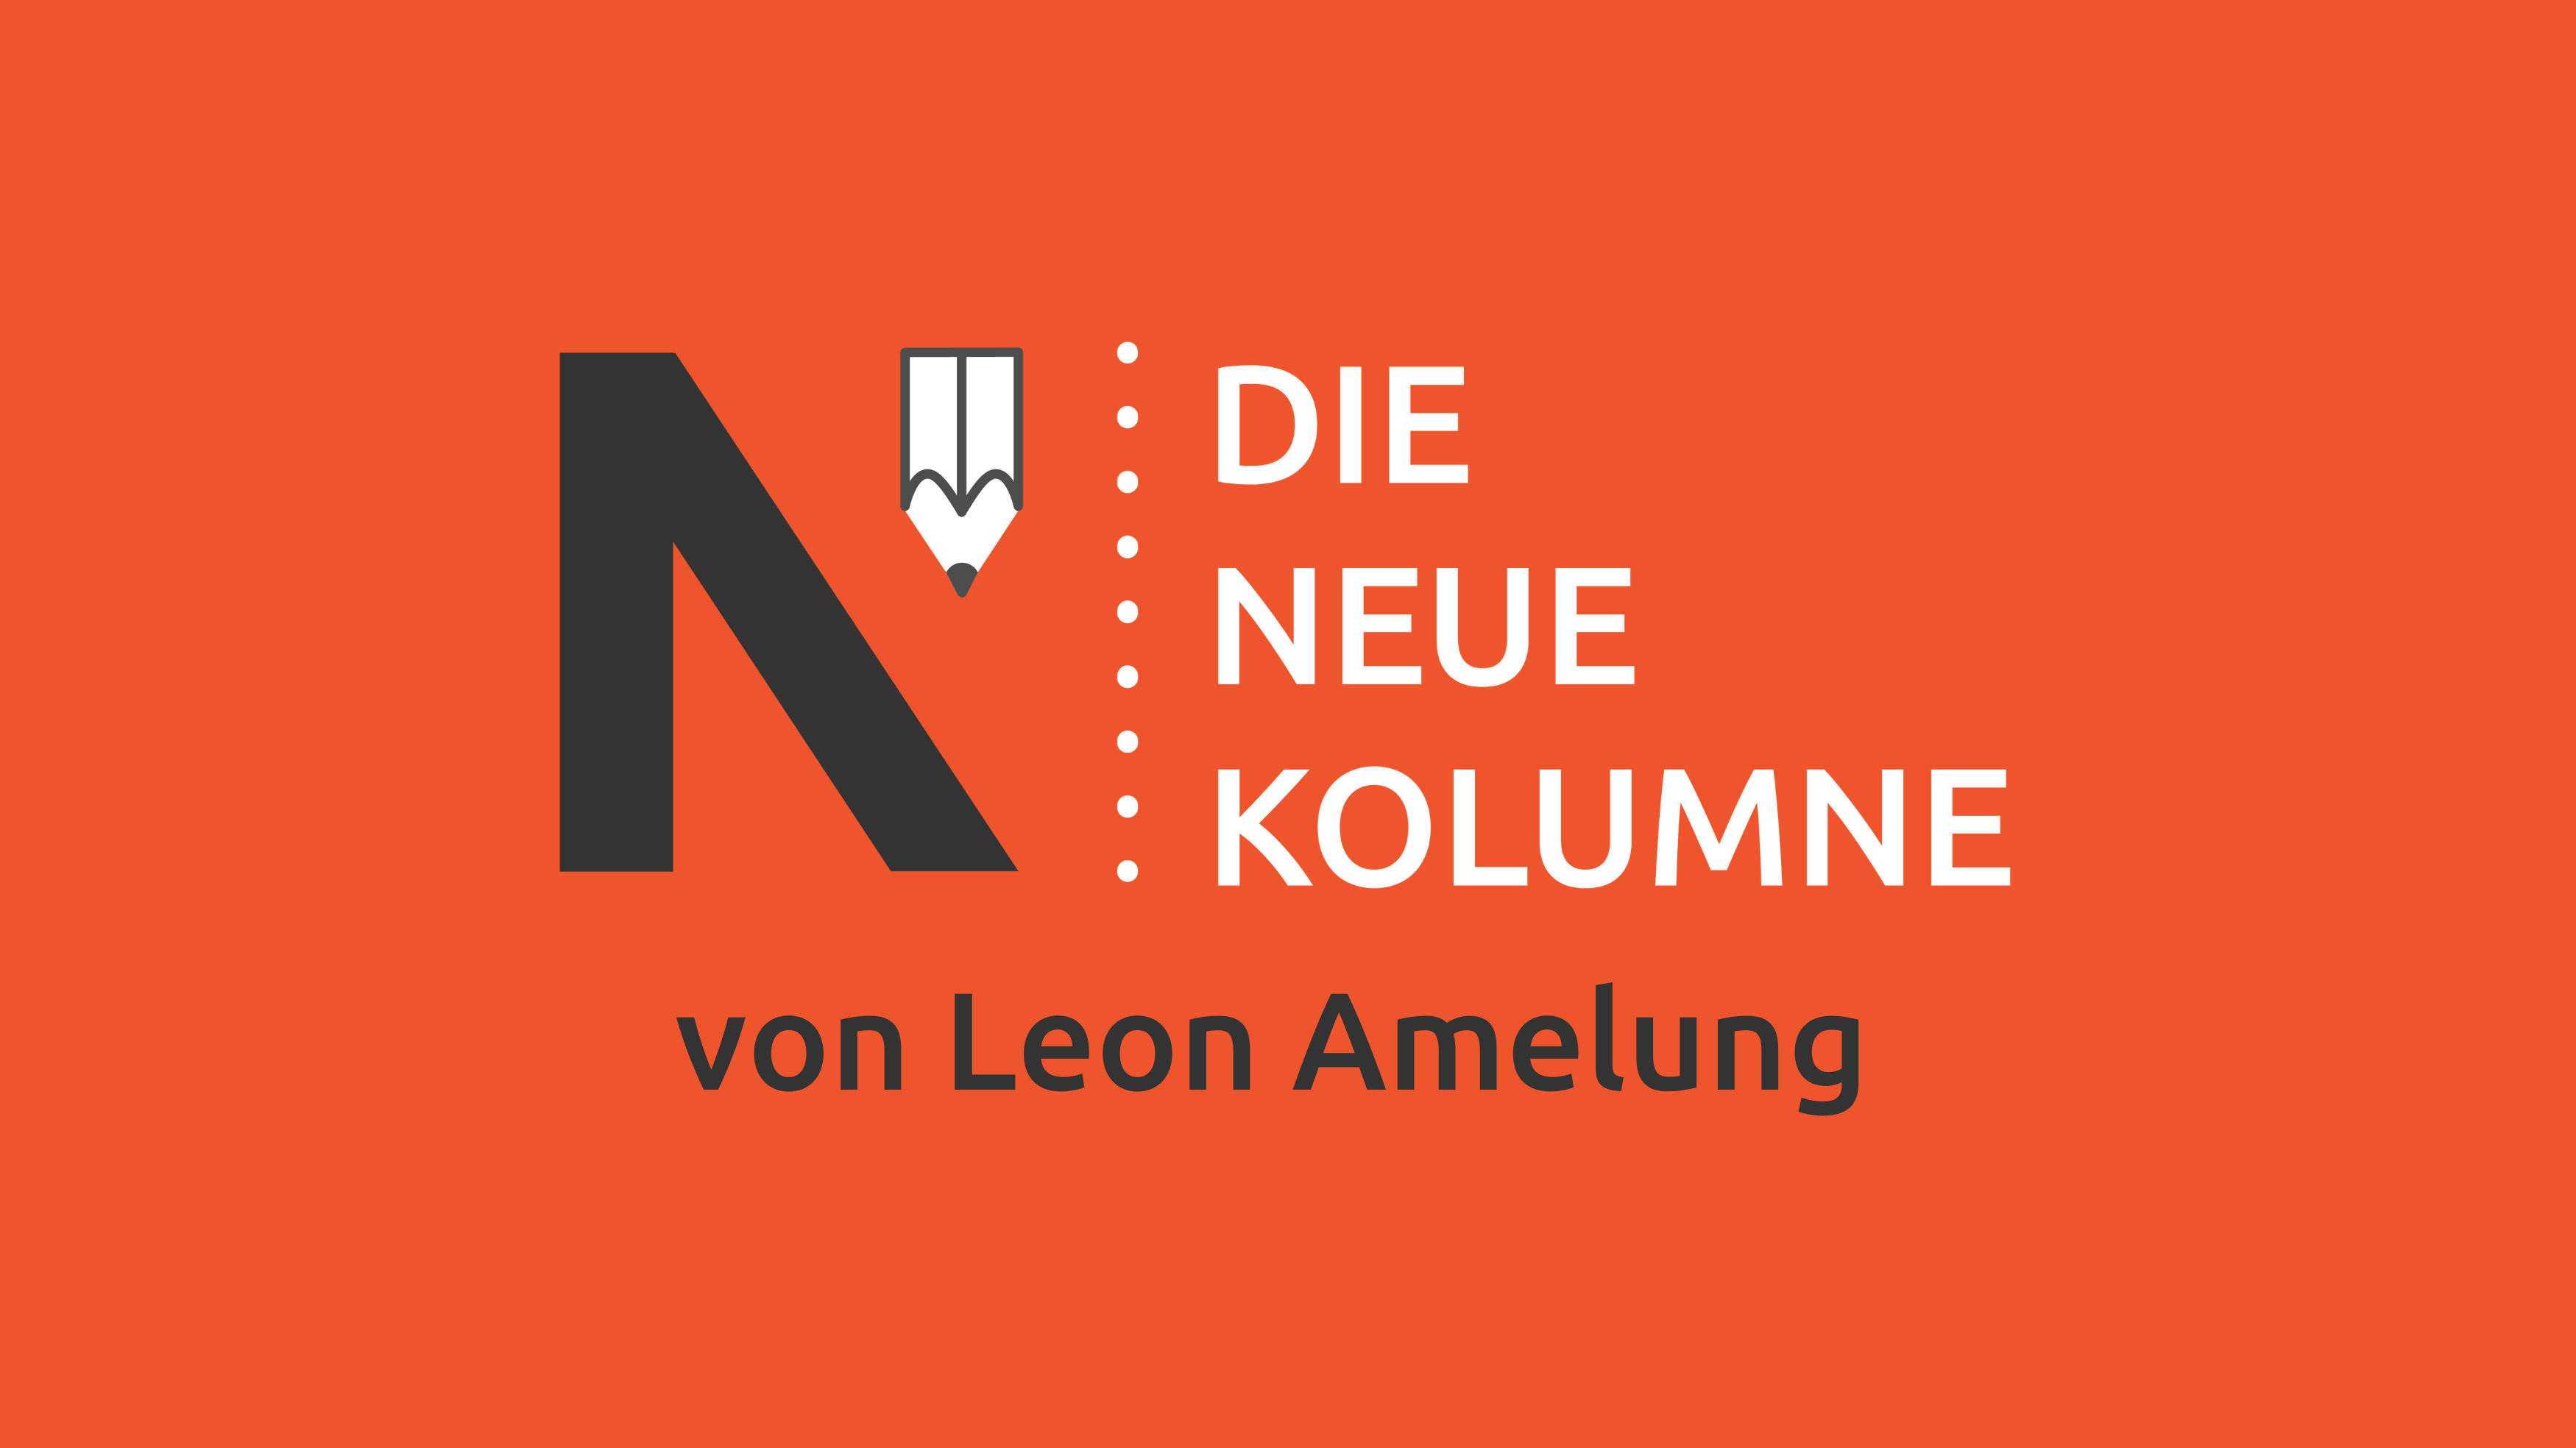 Das Logo von die neue Norm auf rotem Grund. Rechts davon steht: Die Neue Kolumne. Unten steht: Von Leon Amelung.